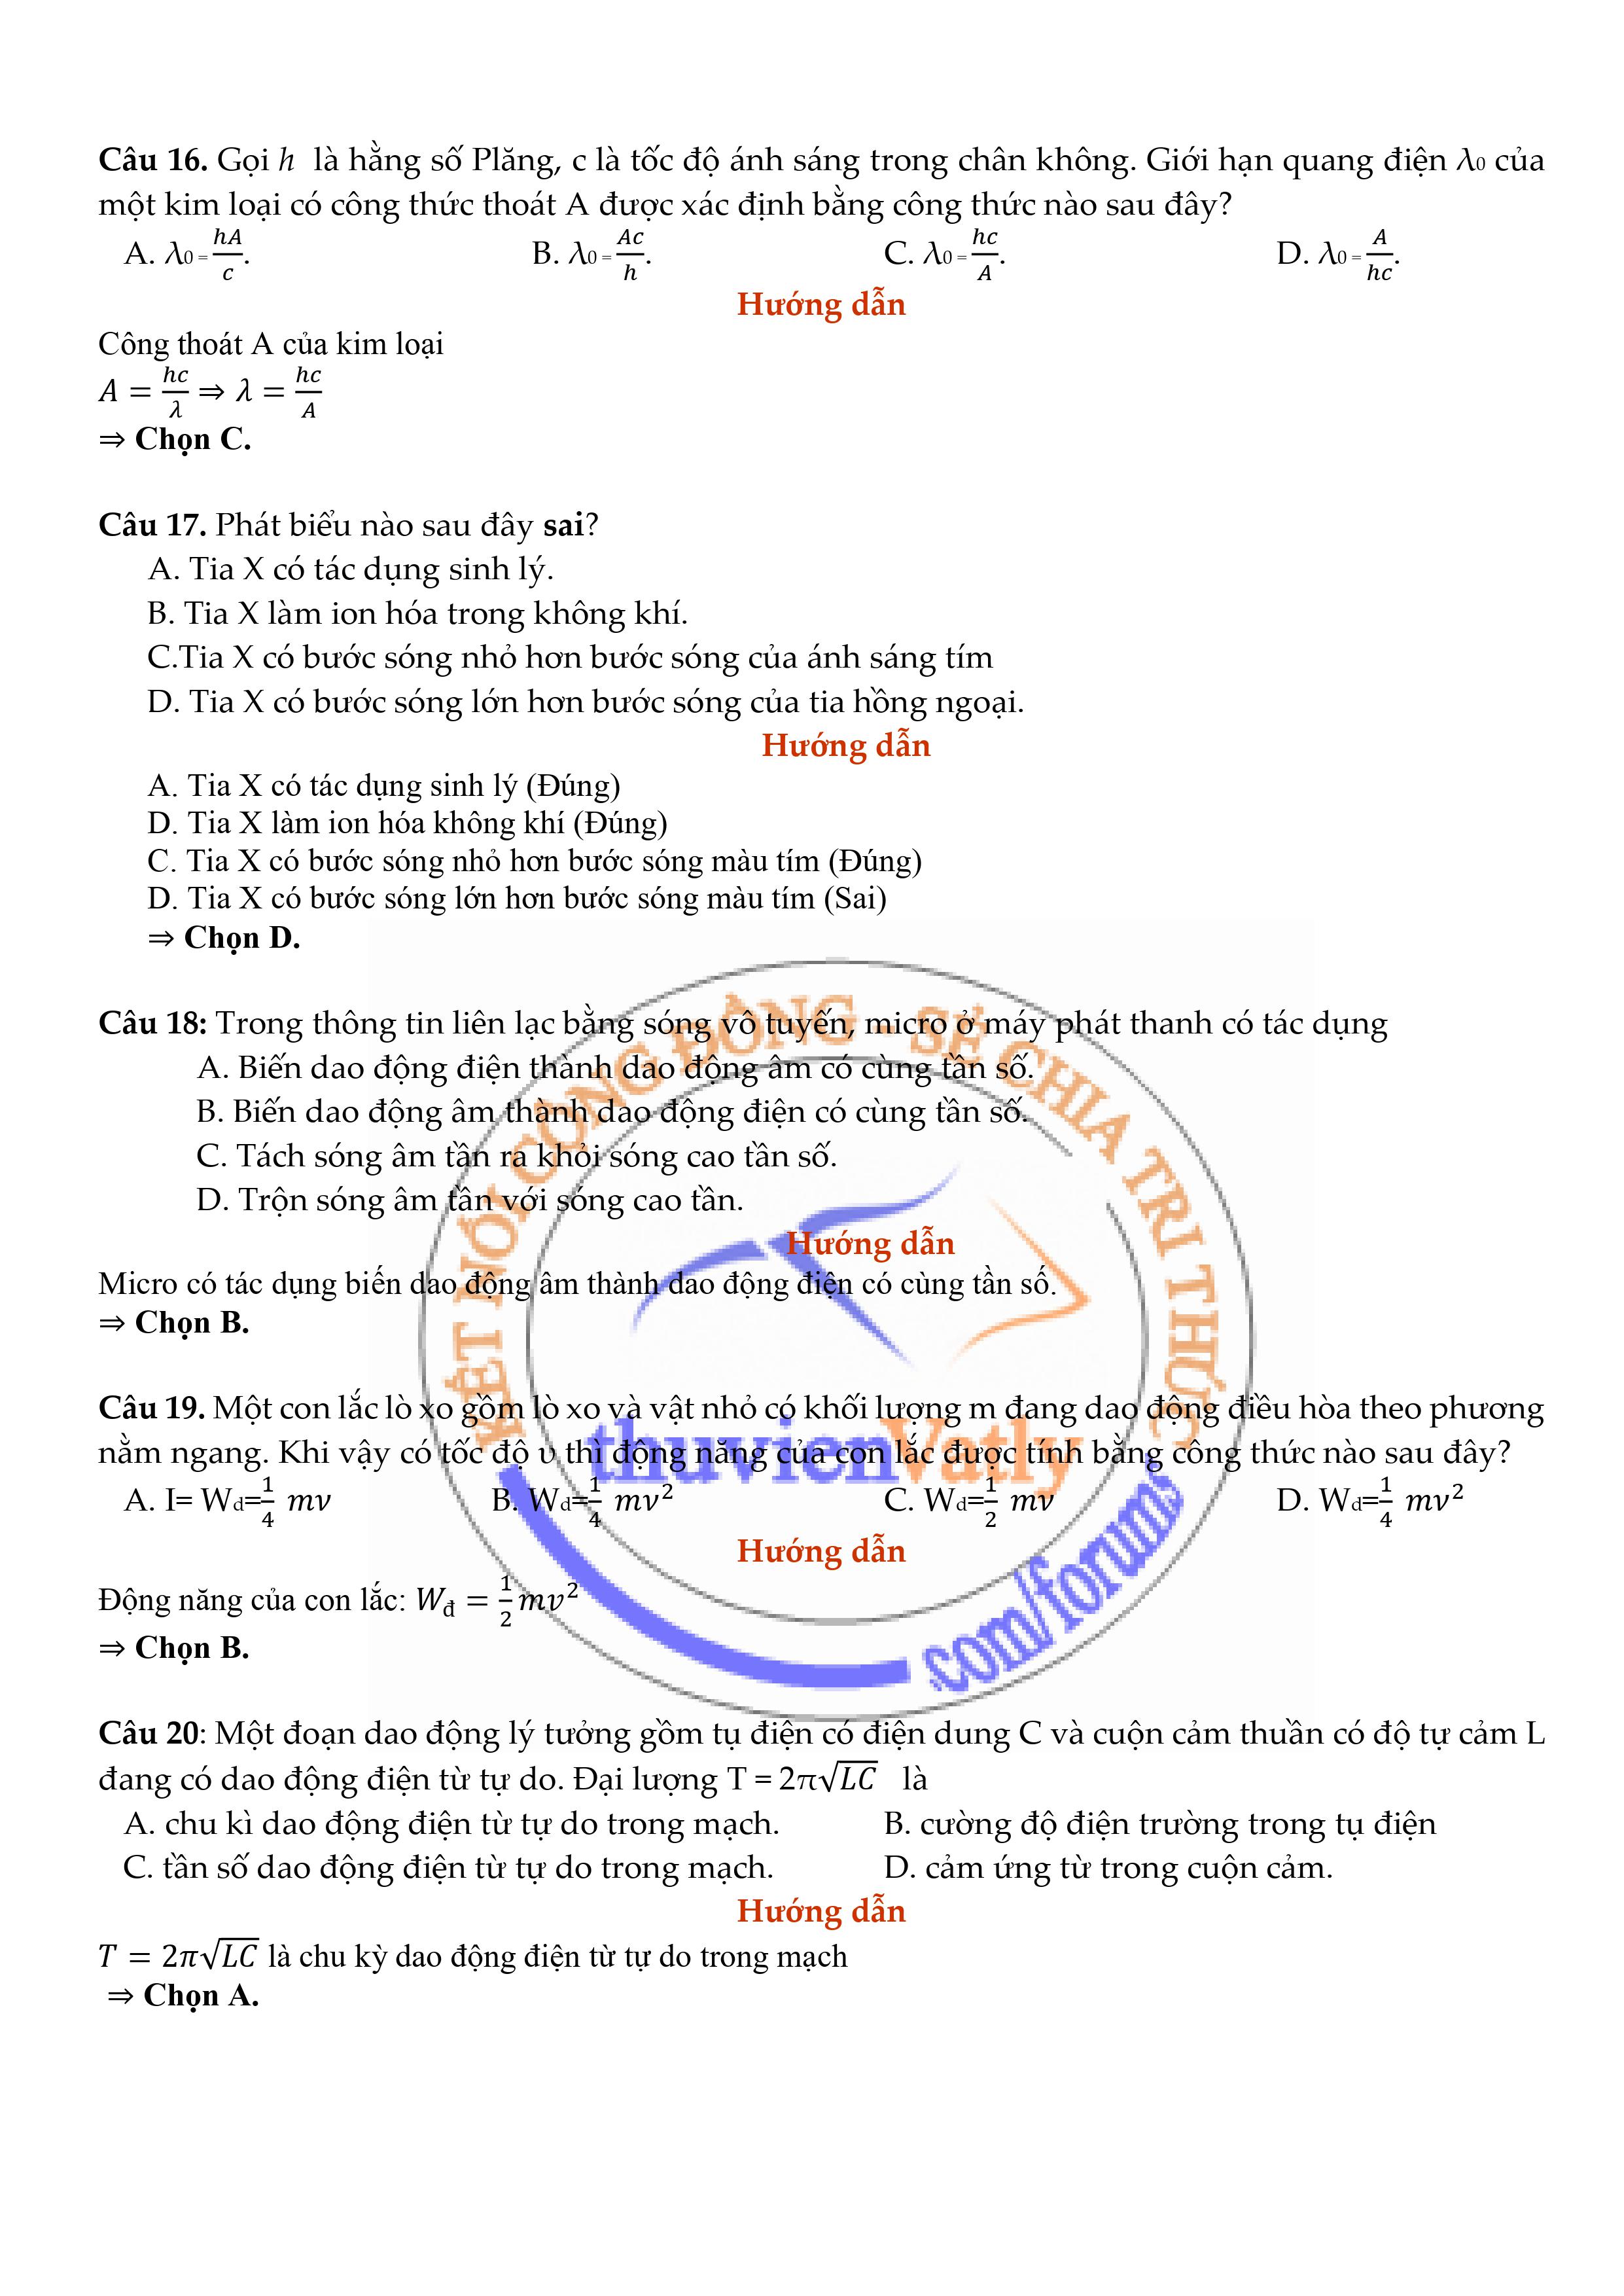 Trang 4 - Giải chi tiết mã đề 206 môn Vật Lý đề thi TN THPT 2020